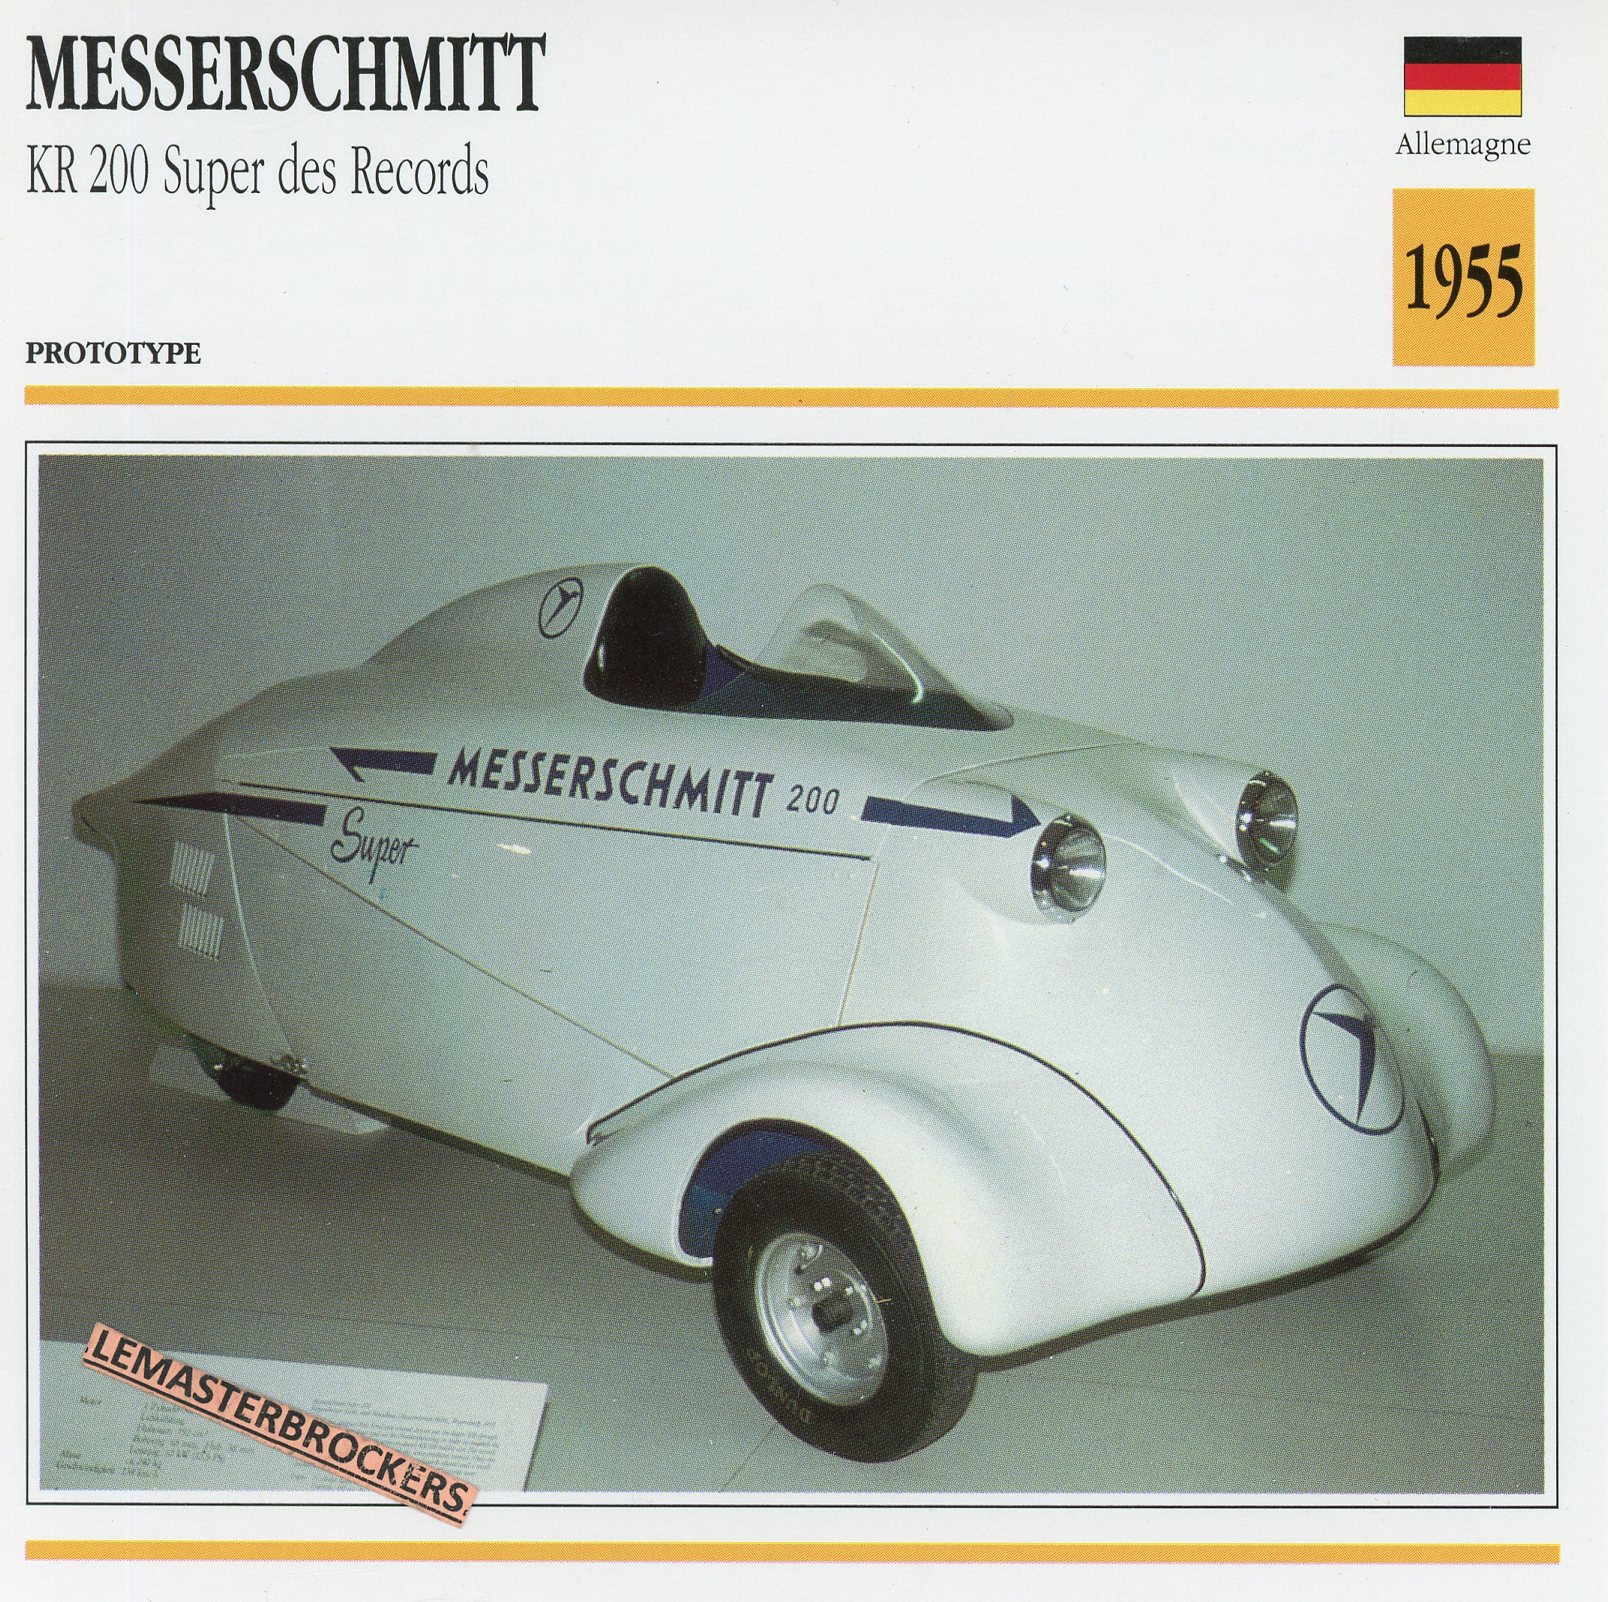 FICHE-MESSERSCHMITT-KR200-RECORDS-1955-LEMASTERBROCKERS